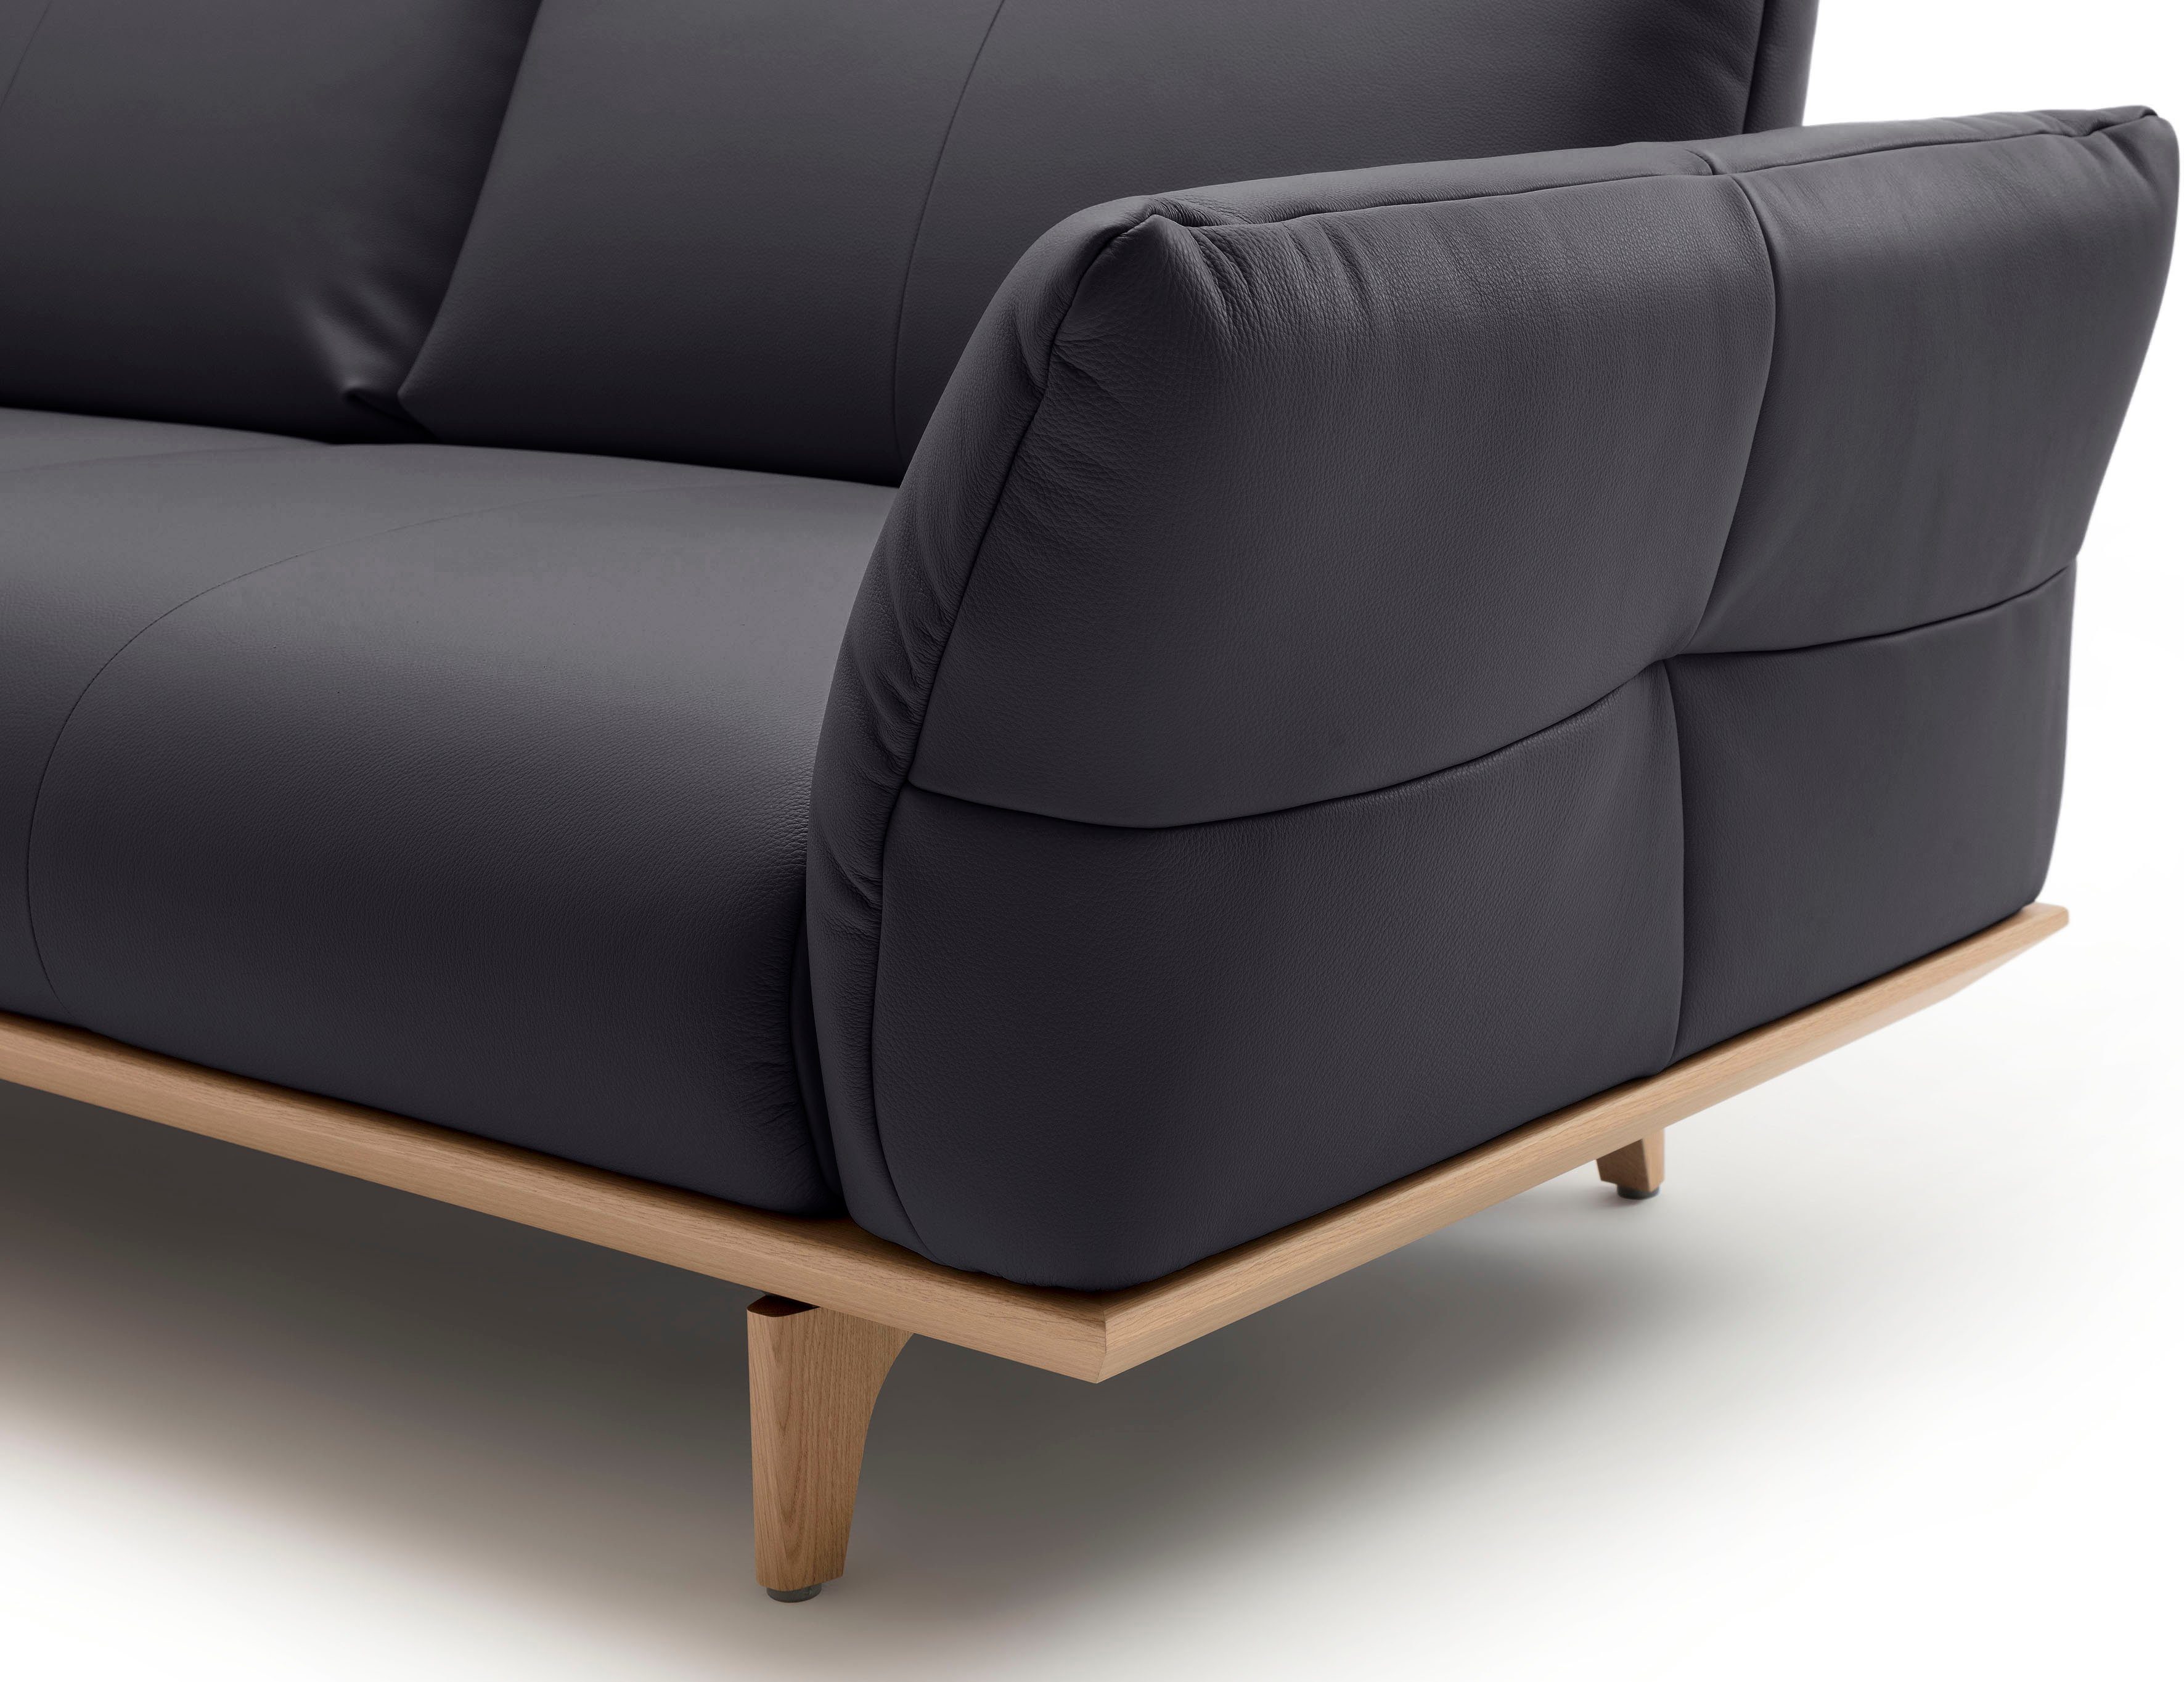 4-Sitzer Sockel Eiche, hülsta natur, hs.460, Füße sofa Breite in 248 cm Eiche